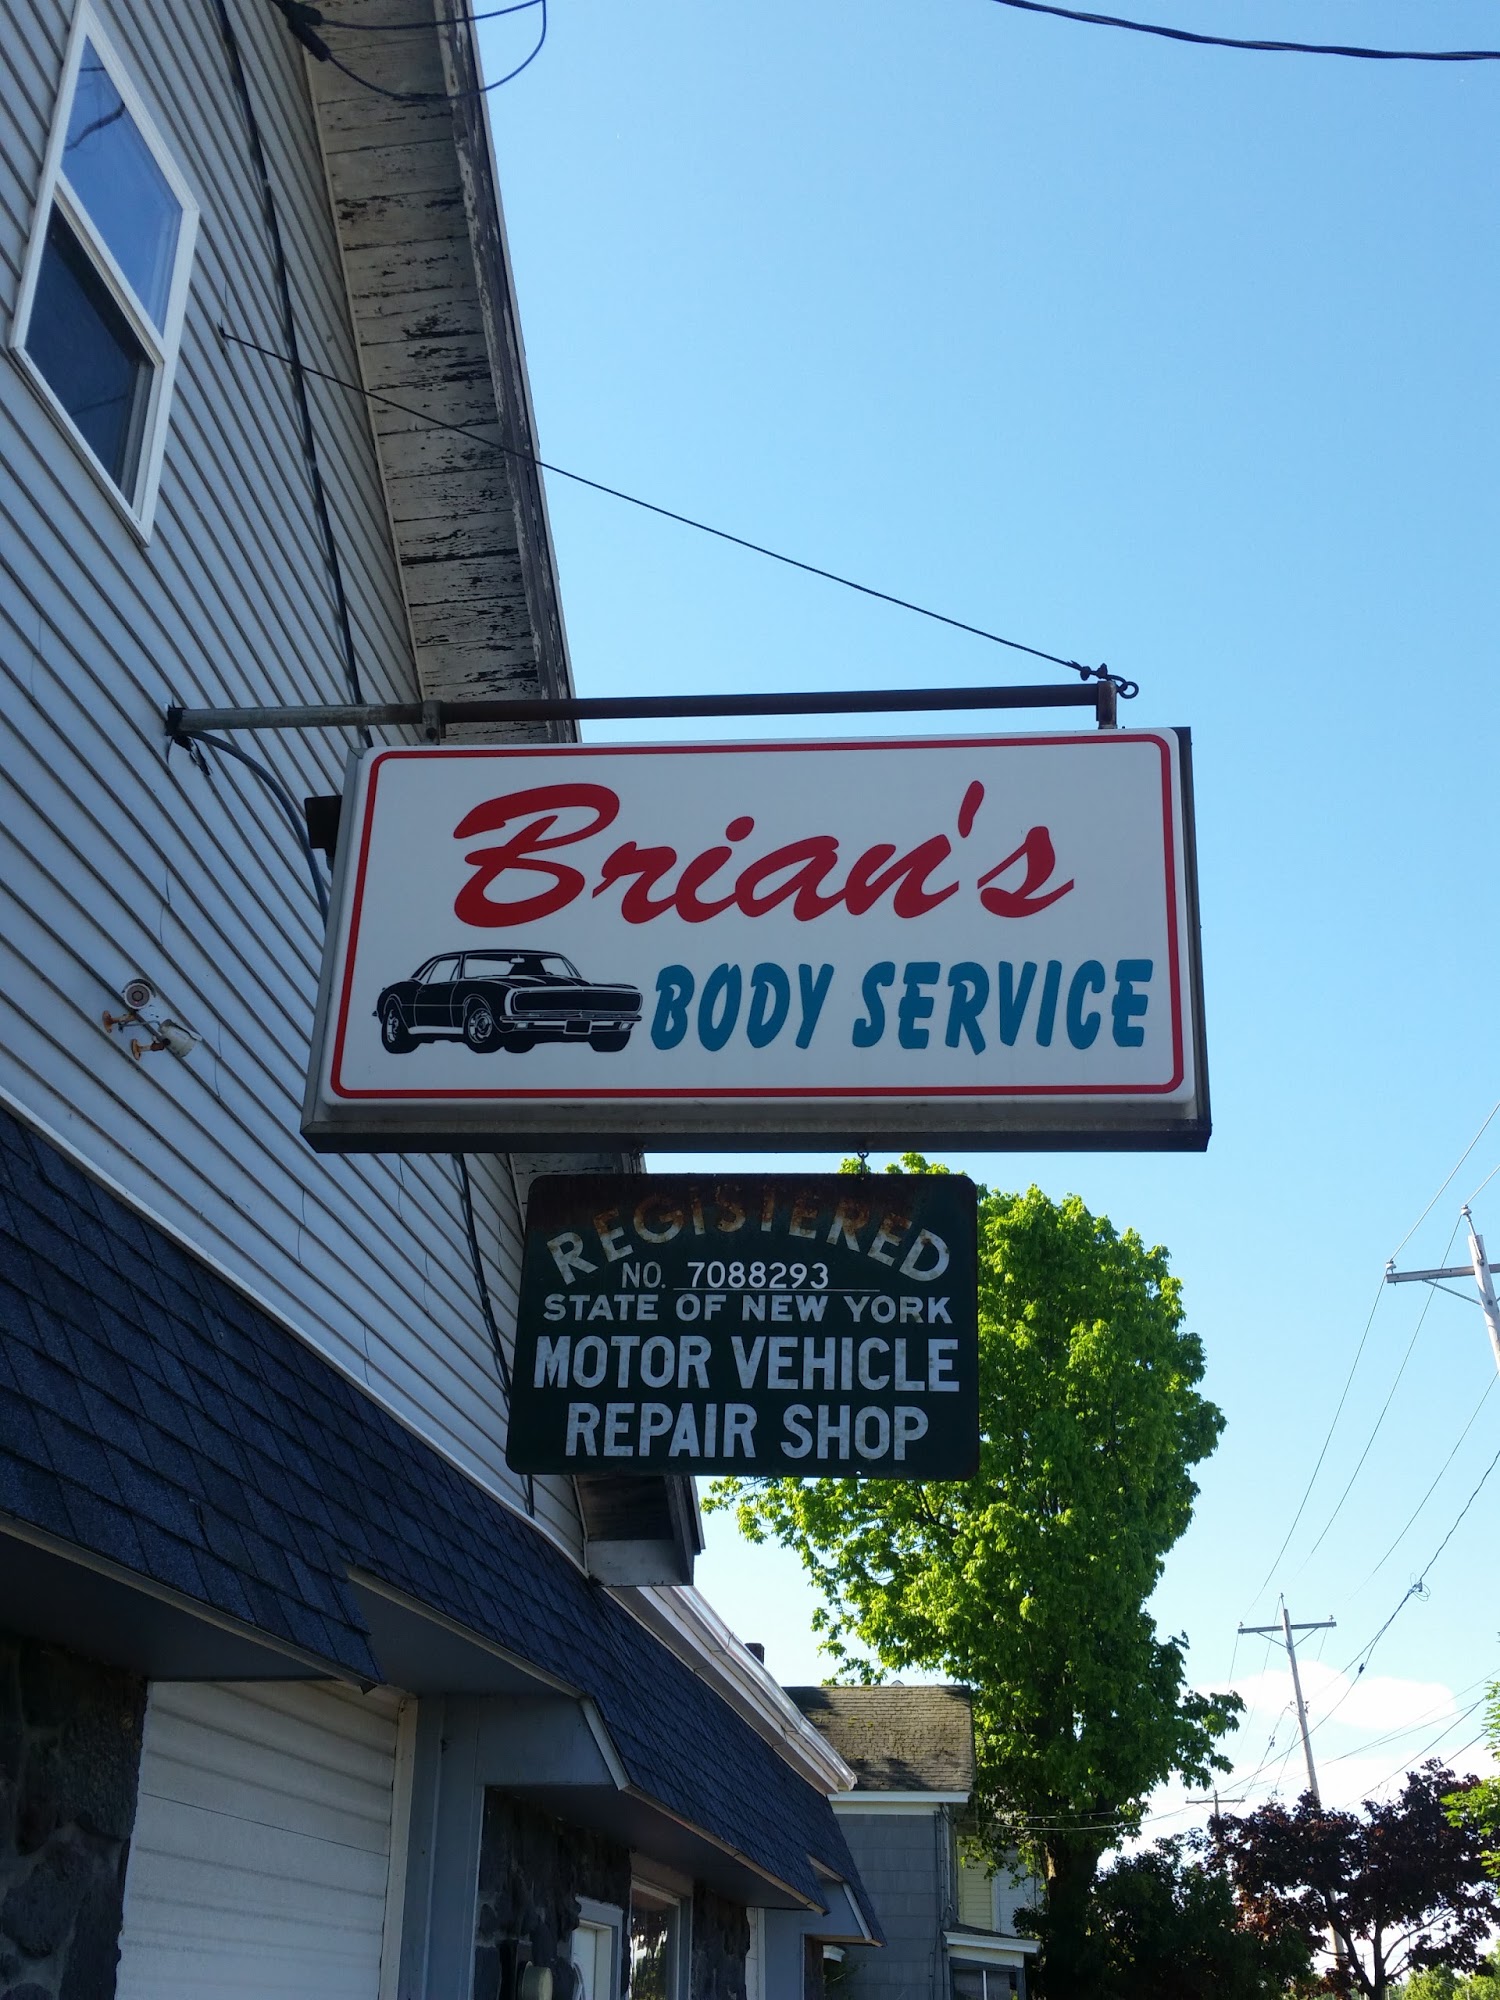 Brian's Body Services